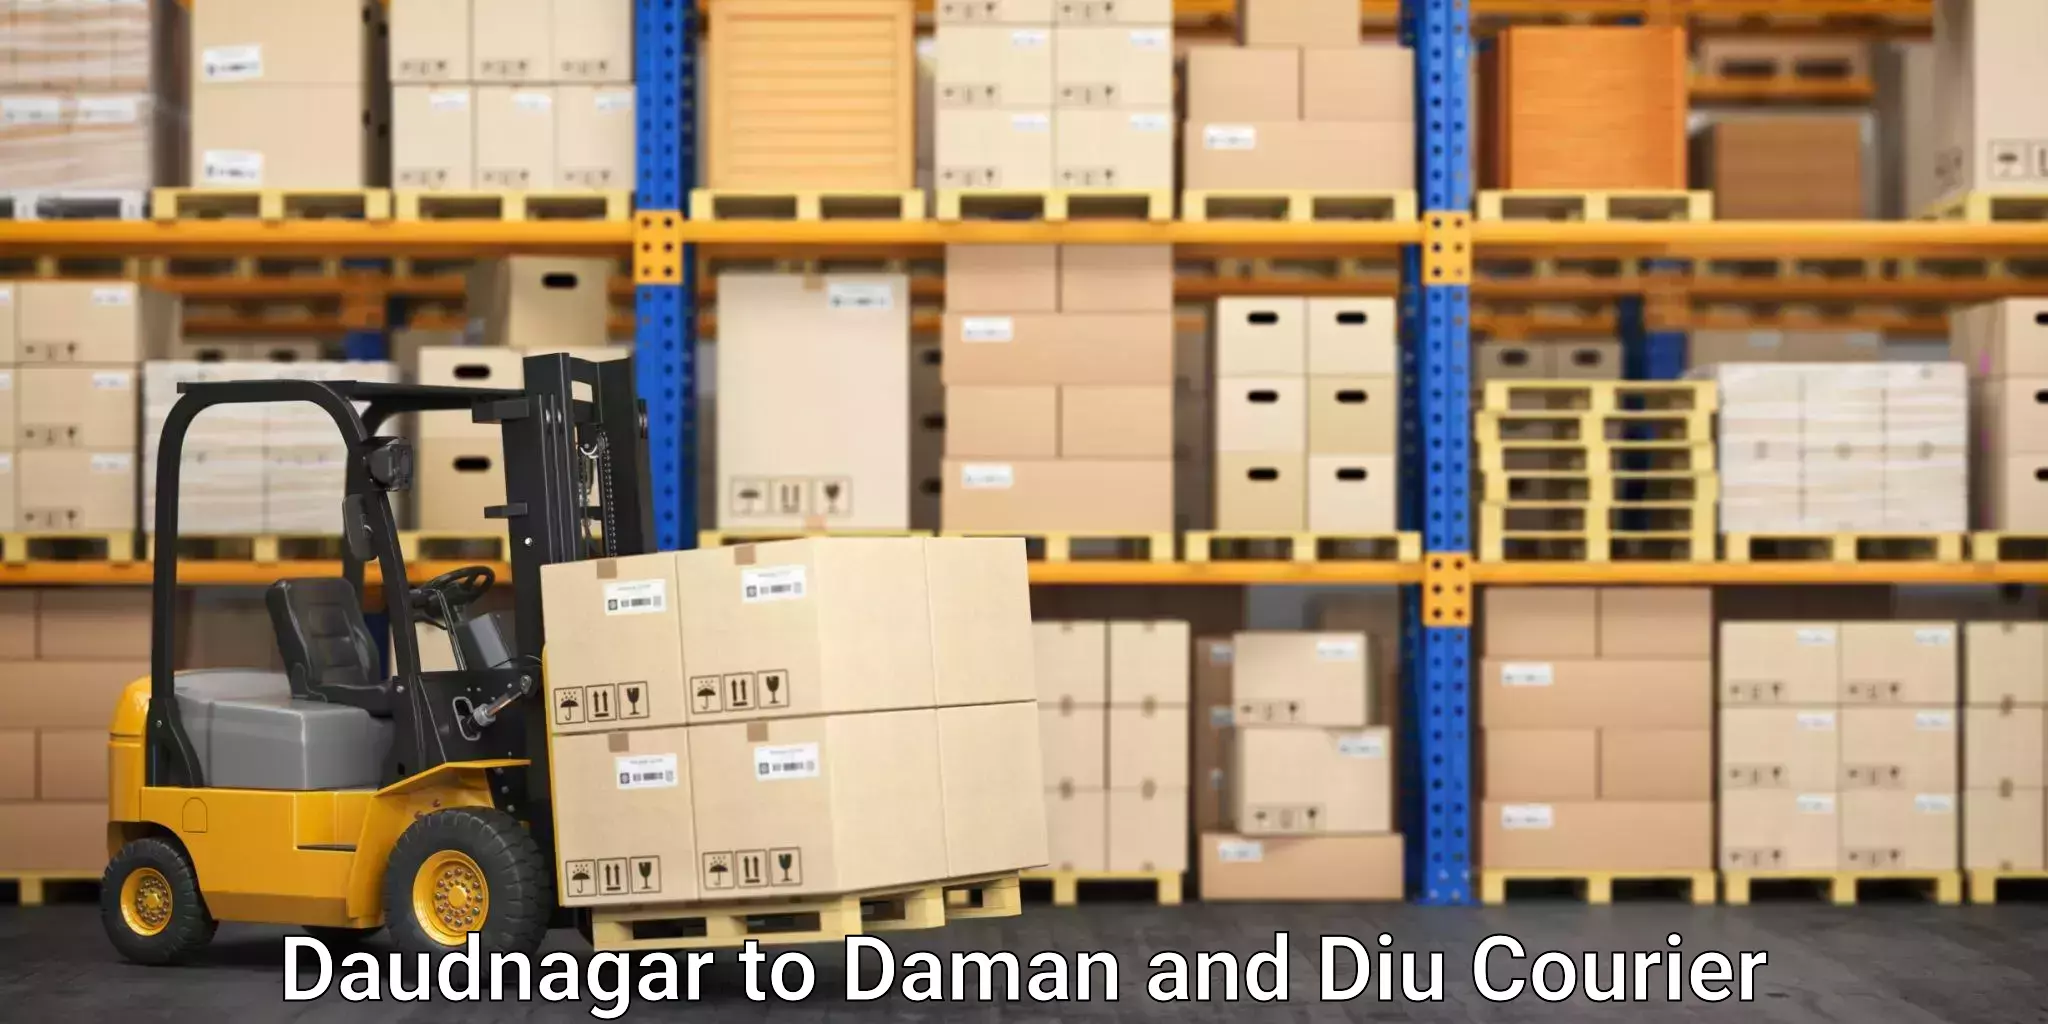 Professional relocation services Daudnagar to Daman and Diu